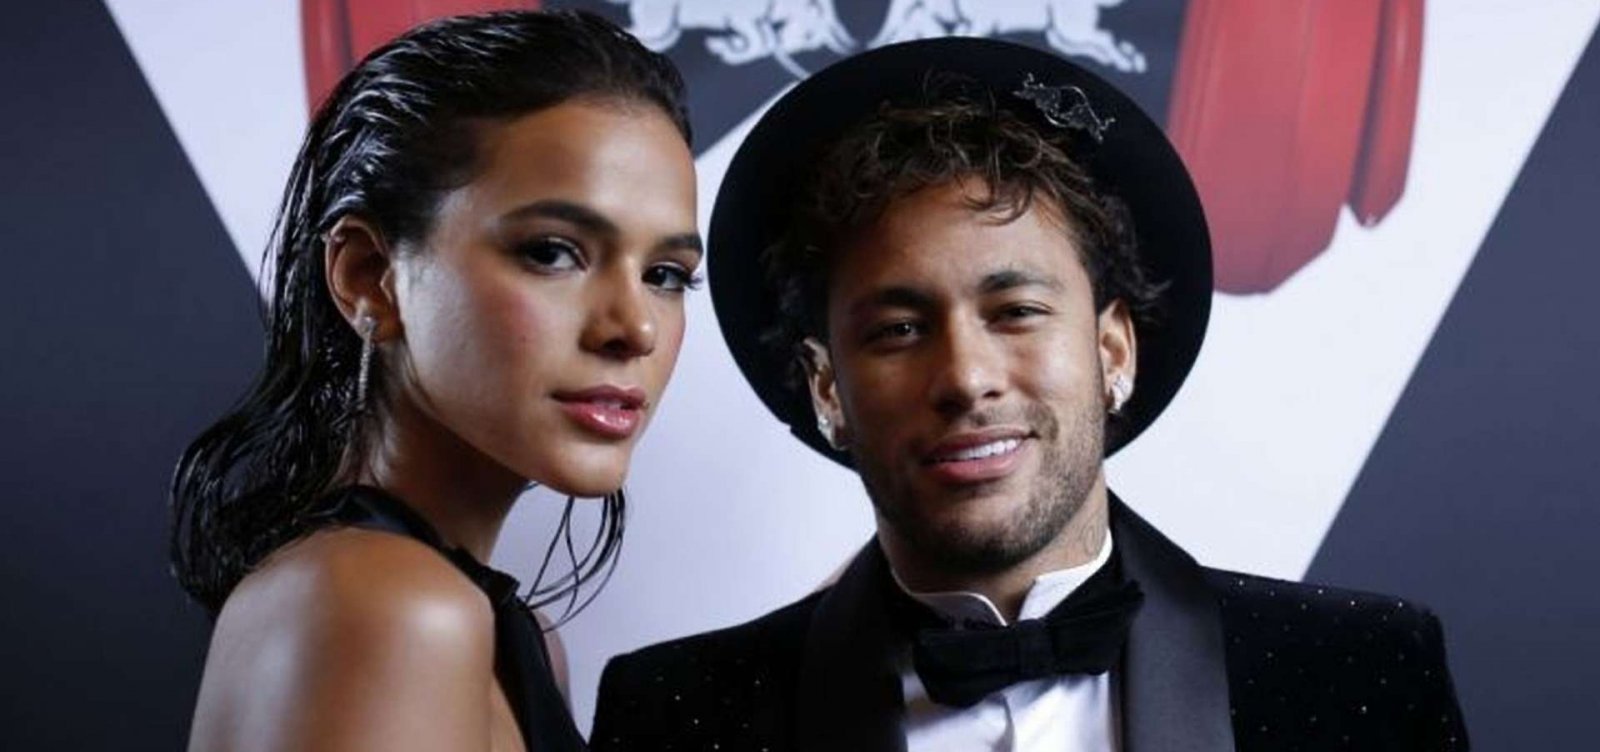 Bruna Marquezine descarta retorno com Neymar: 'Não teremos mais uma temporada'